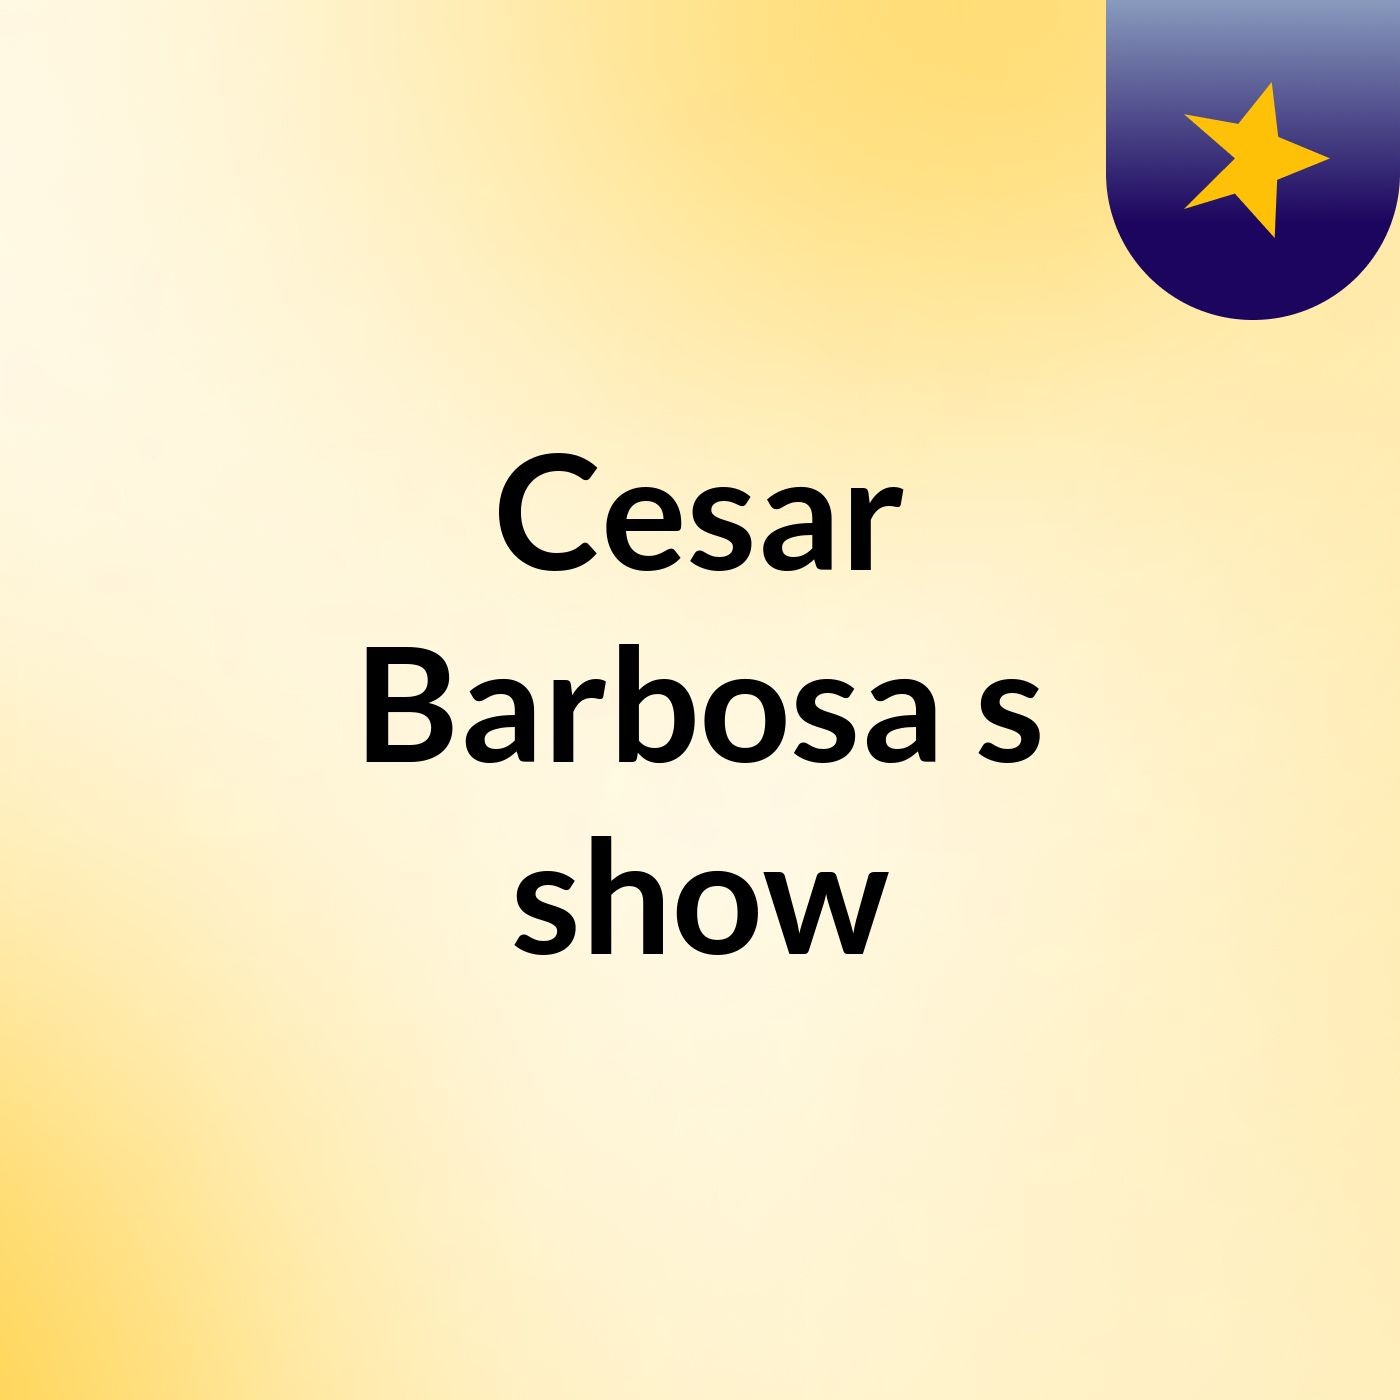 Cesar Barbosa's show